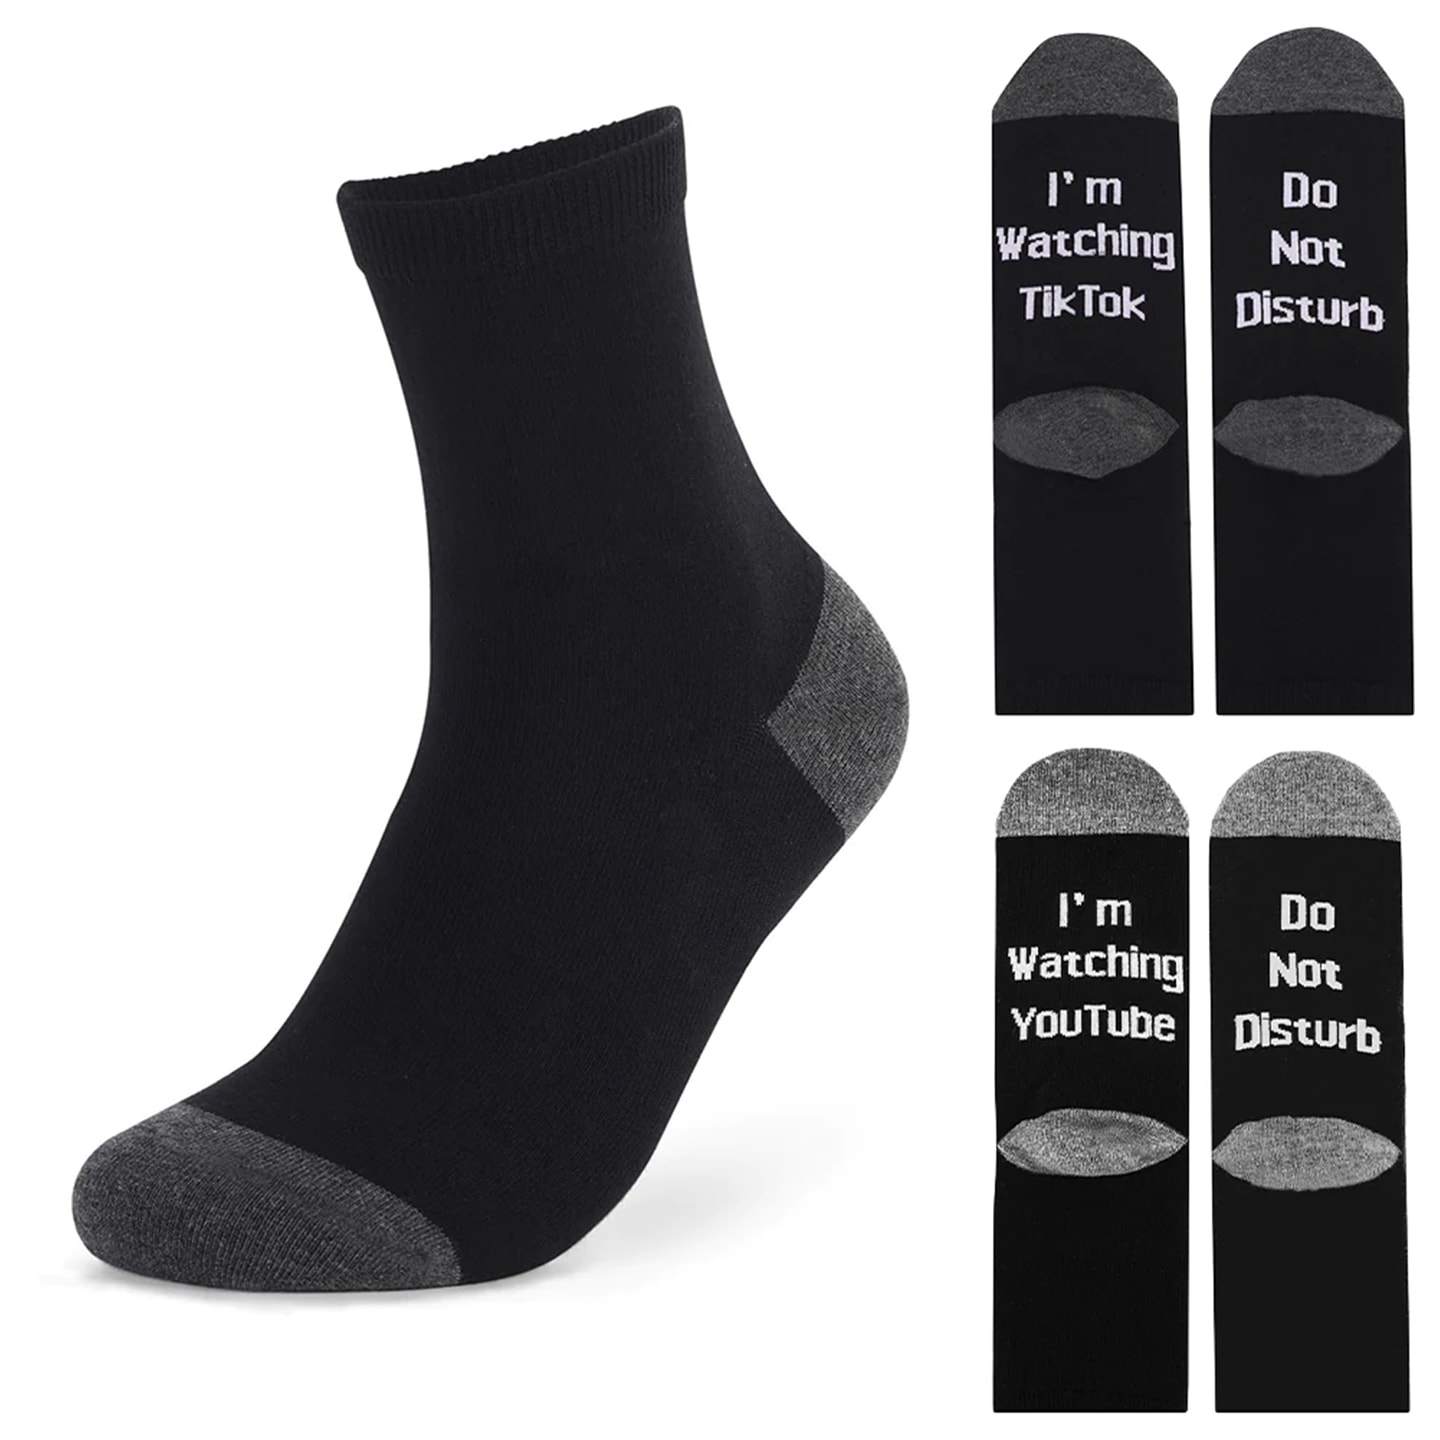 IKKE FORSTYRR unisex medium sokker (1 av 8)